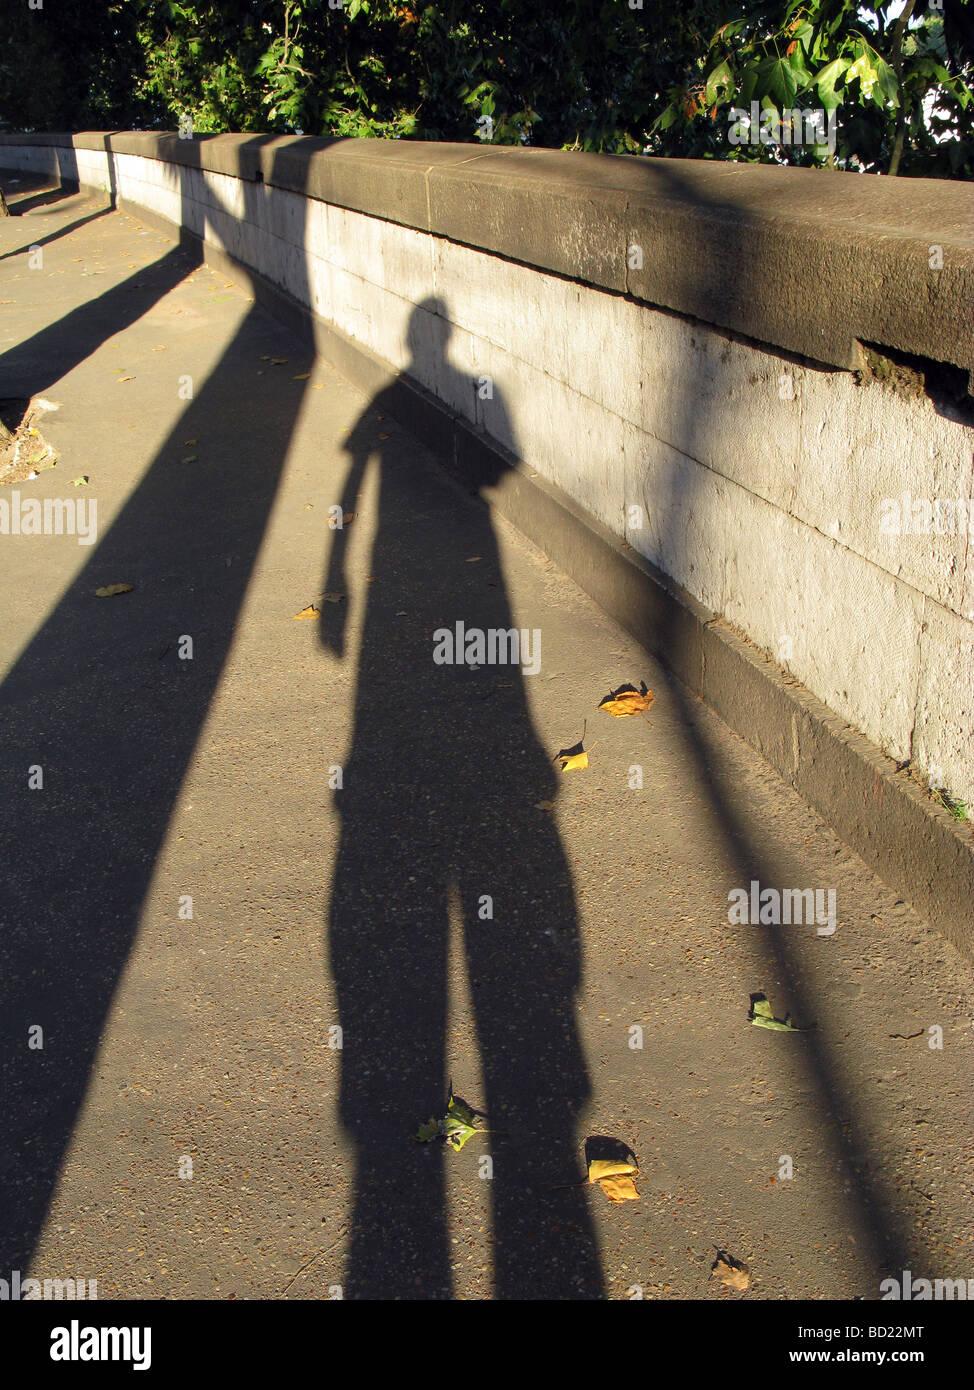 L'ombre portée de l'homme sur le trottoir en ville ville Banque D'Images